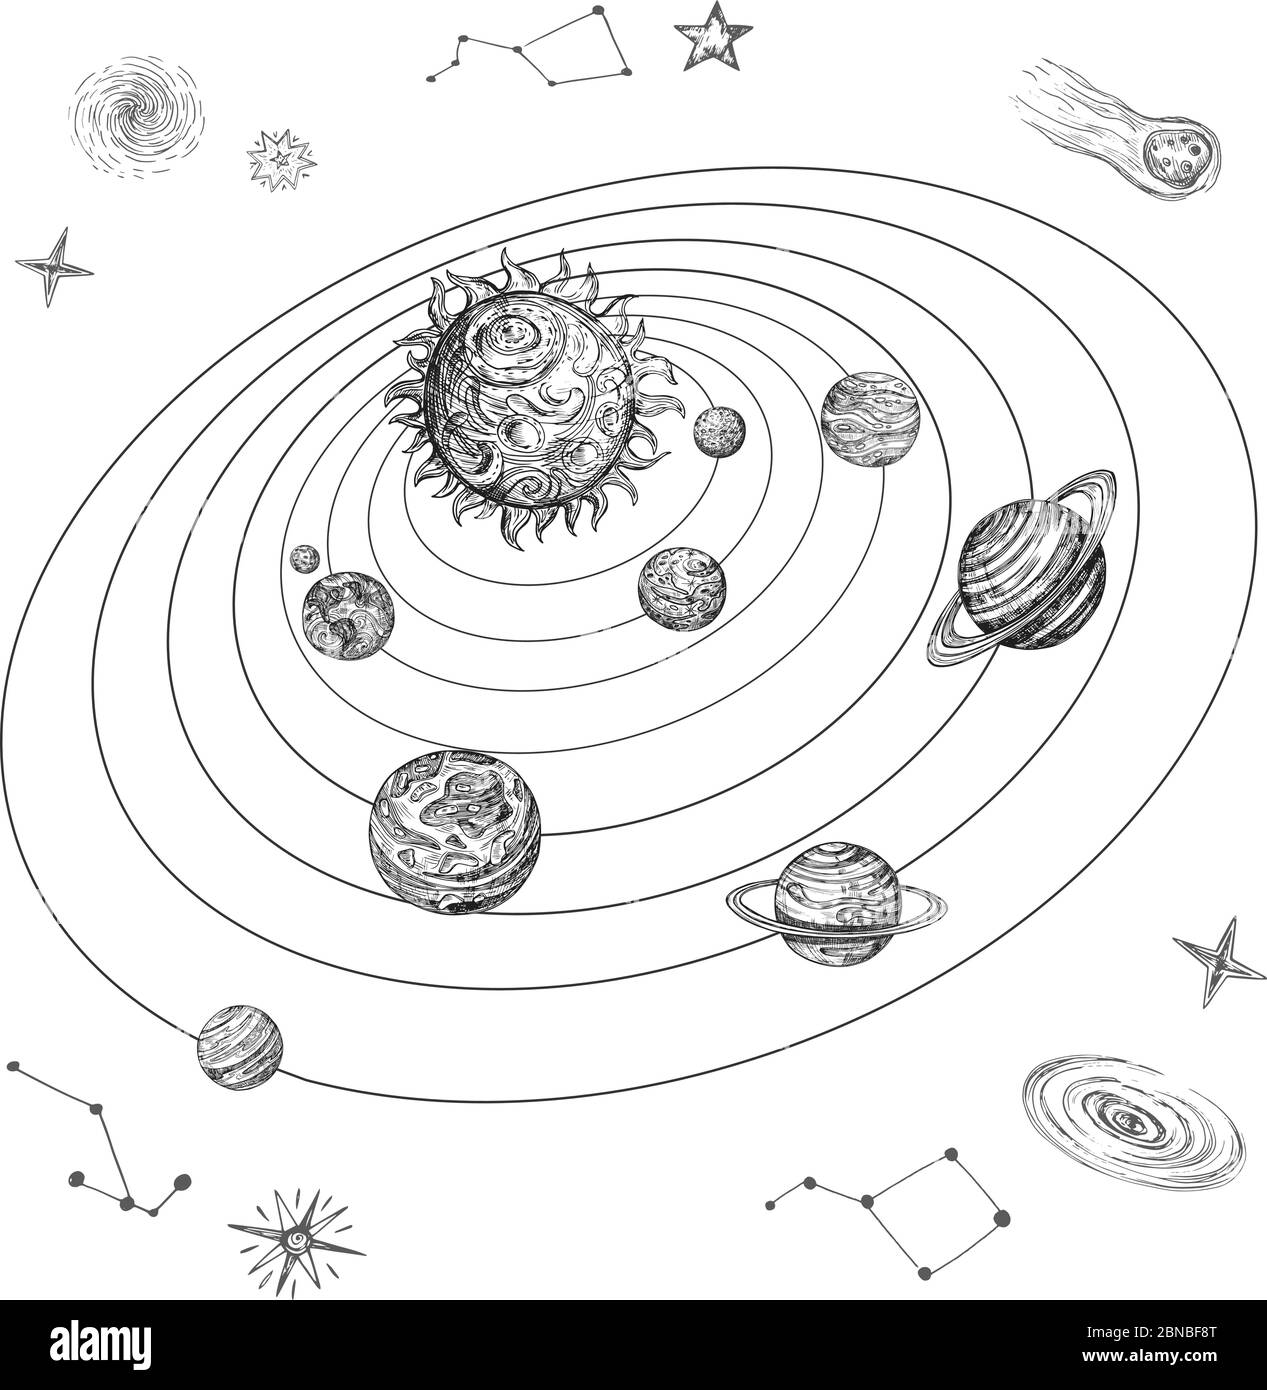 Handgezeichnetes Sonnensystem mit Sonne, Planeten, Sternen und Raumobjekten. Doodle Raum Vintage Vektor Illustration. Sonnensystem Sonne, Astronomie und Galaxie kosmisch Stock Vektor